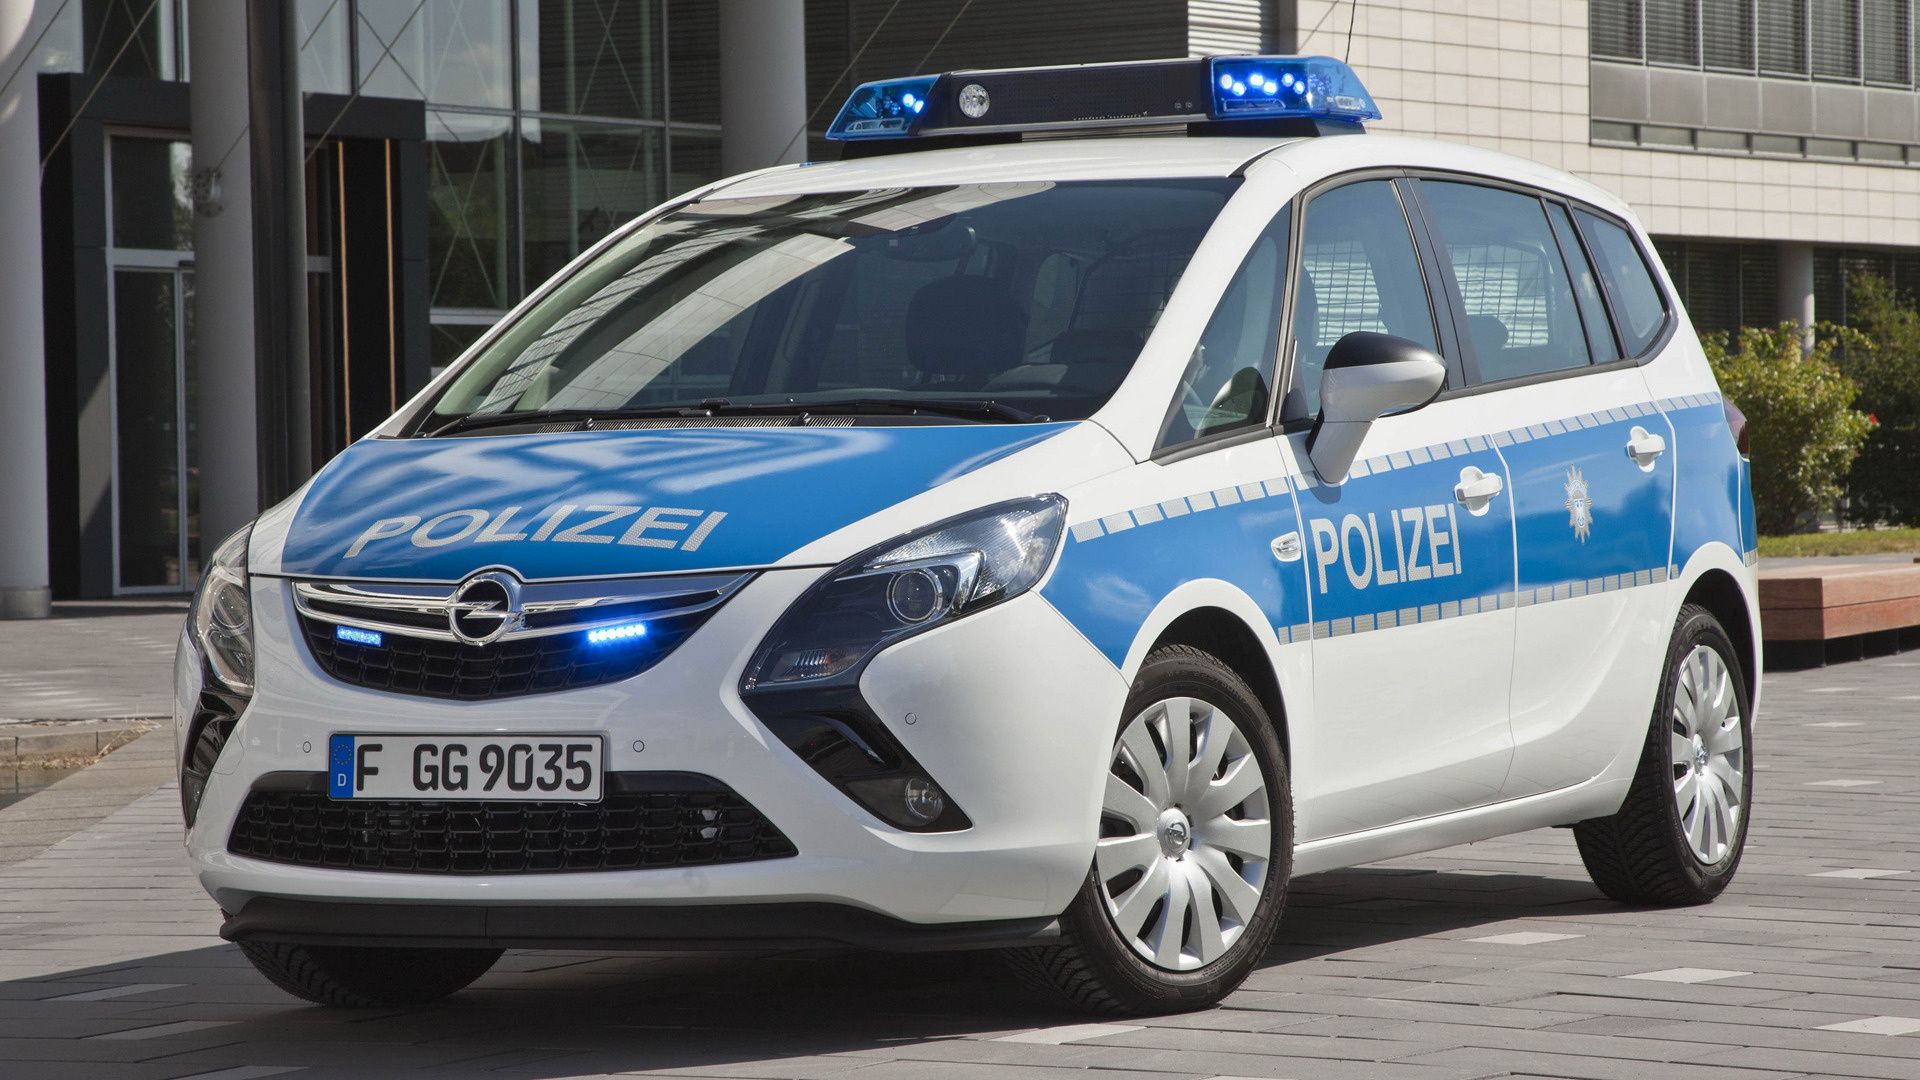 Opel Zafira Tourer Polizei and HD Image